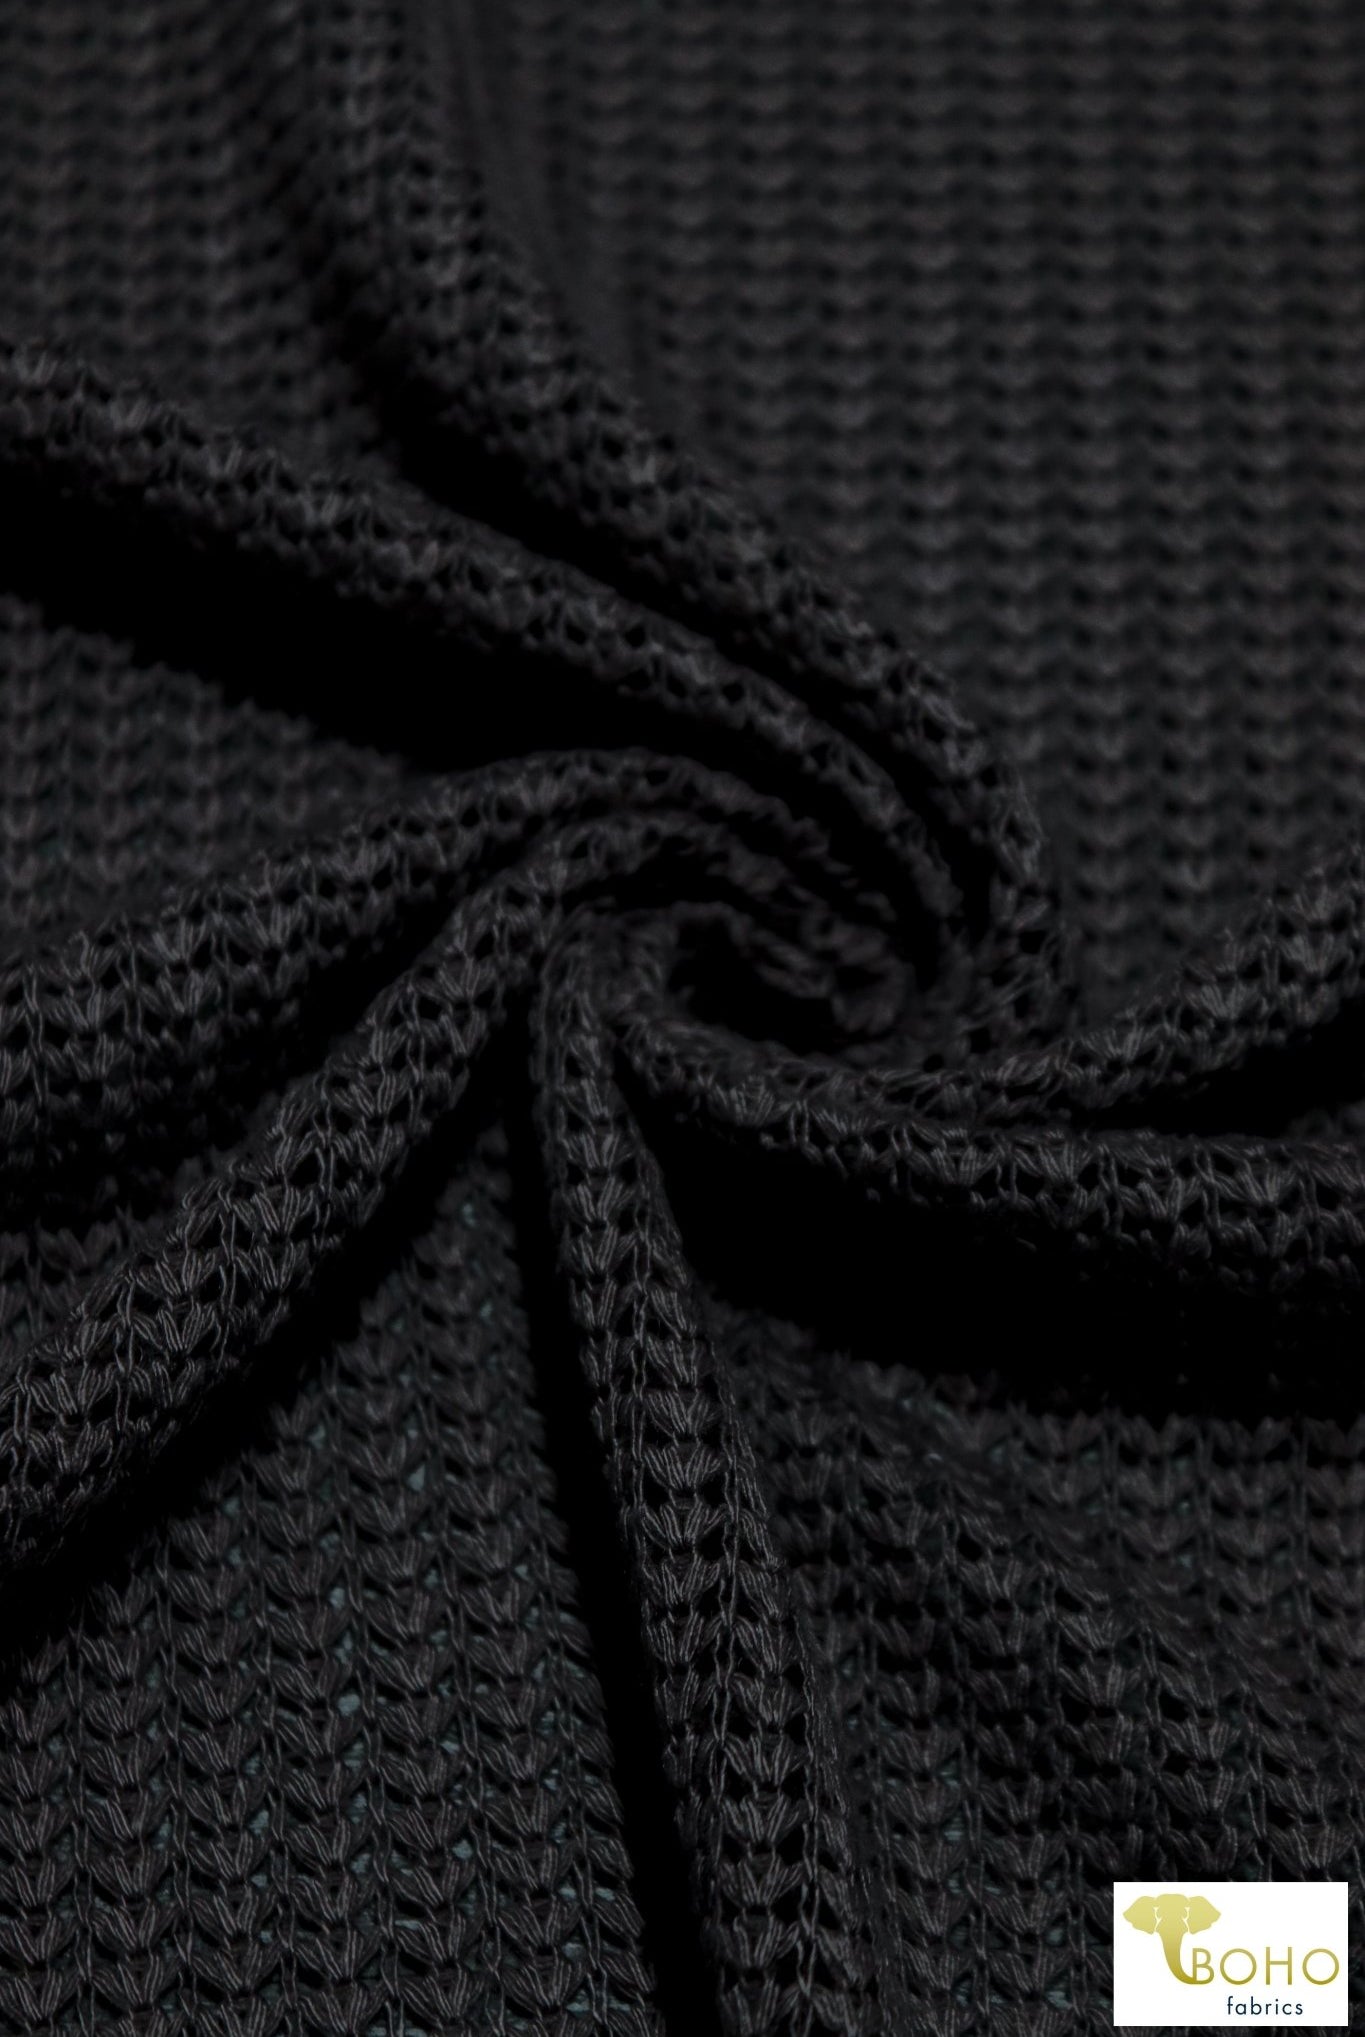 Brioche Stitches in Black, Sweater Knit. SWTR-215-BLK - Boho Fabrics